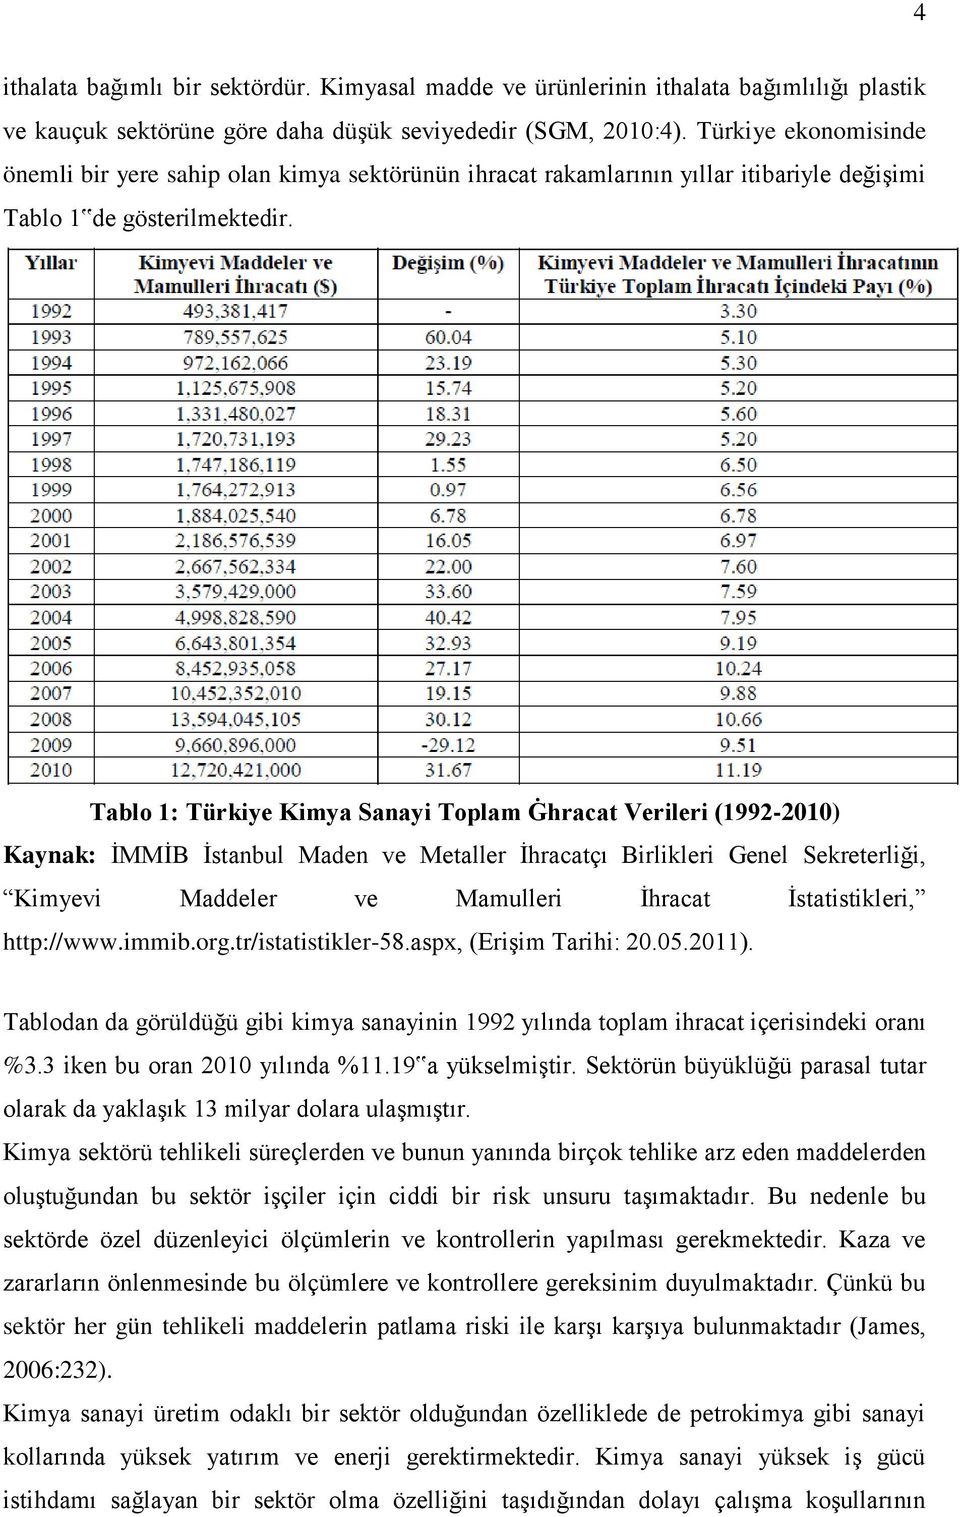 Tablo 1: Türkiye Kimya Sanayi Toplam Ġhracat Verileri (1992-2010) Kaynak: İMMİB İstanbul Maden ve Metaller İhracatçı Birlikleri Genel Sekreterliği, Kimyevi Maddeler ve Mamulleri İhracat